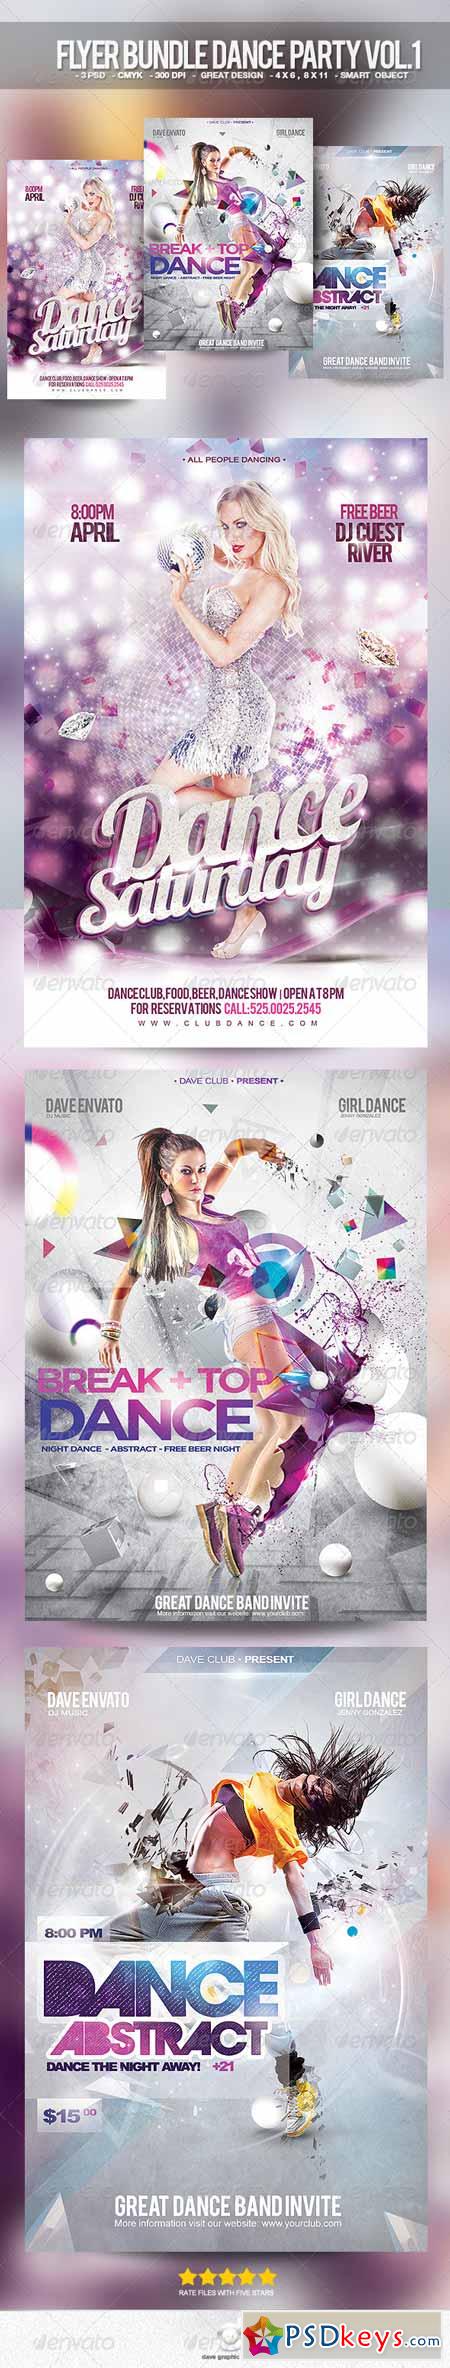 Flyer Bundle Dance Party Vol.1 8760033